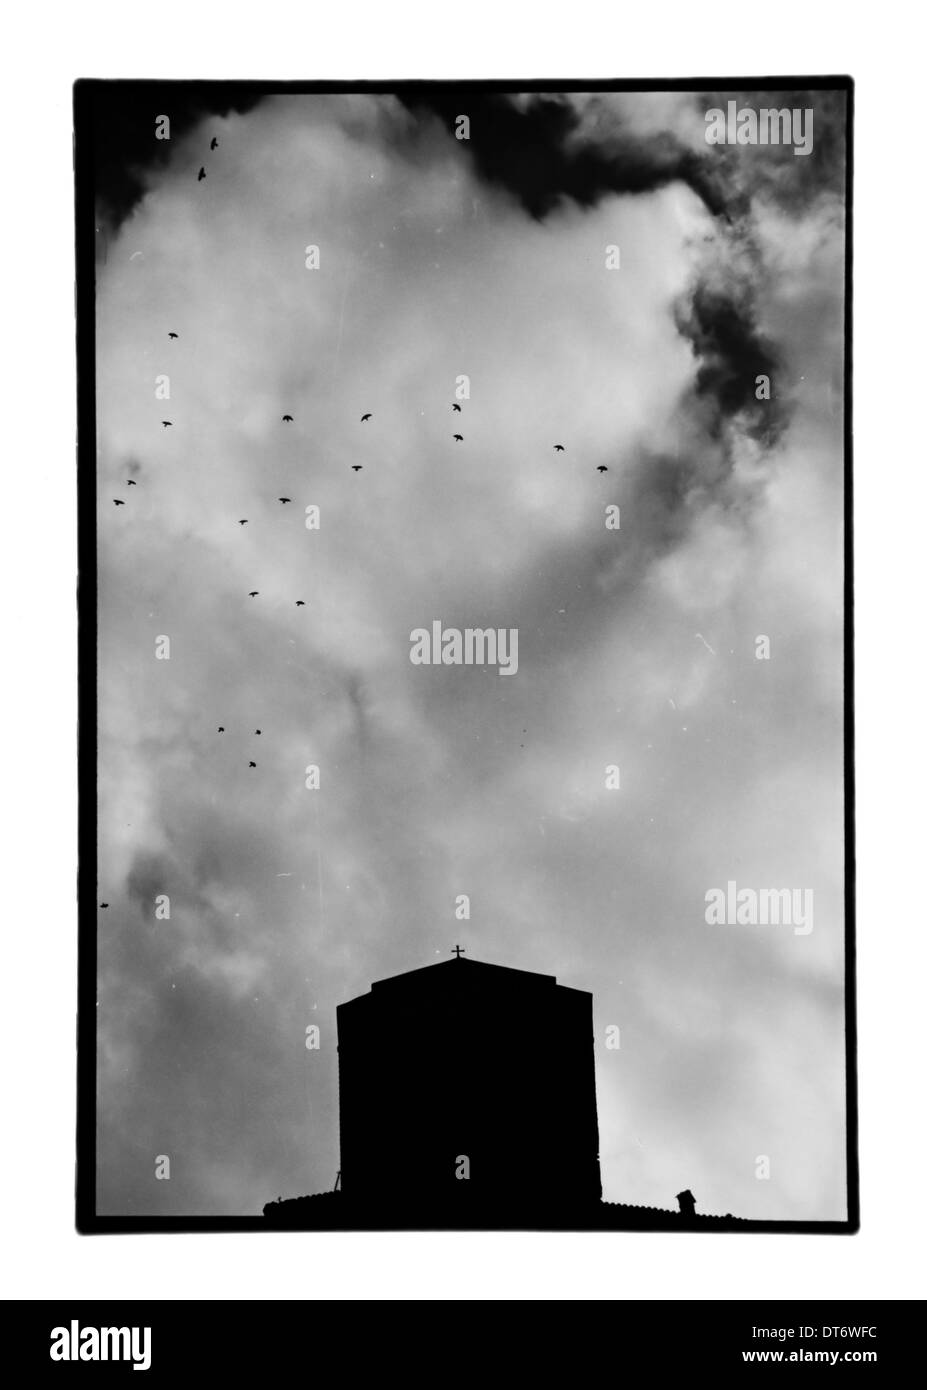 Chiesa sotto il cielo nuvoloso e stormo di uccelli in volo. Bianco e nero stampa camera oscura con polvere e graffi. Meteora, Grecia. Foto Stock